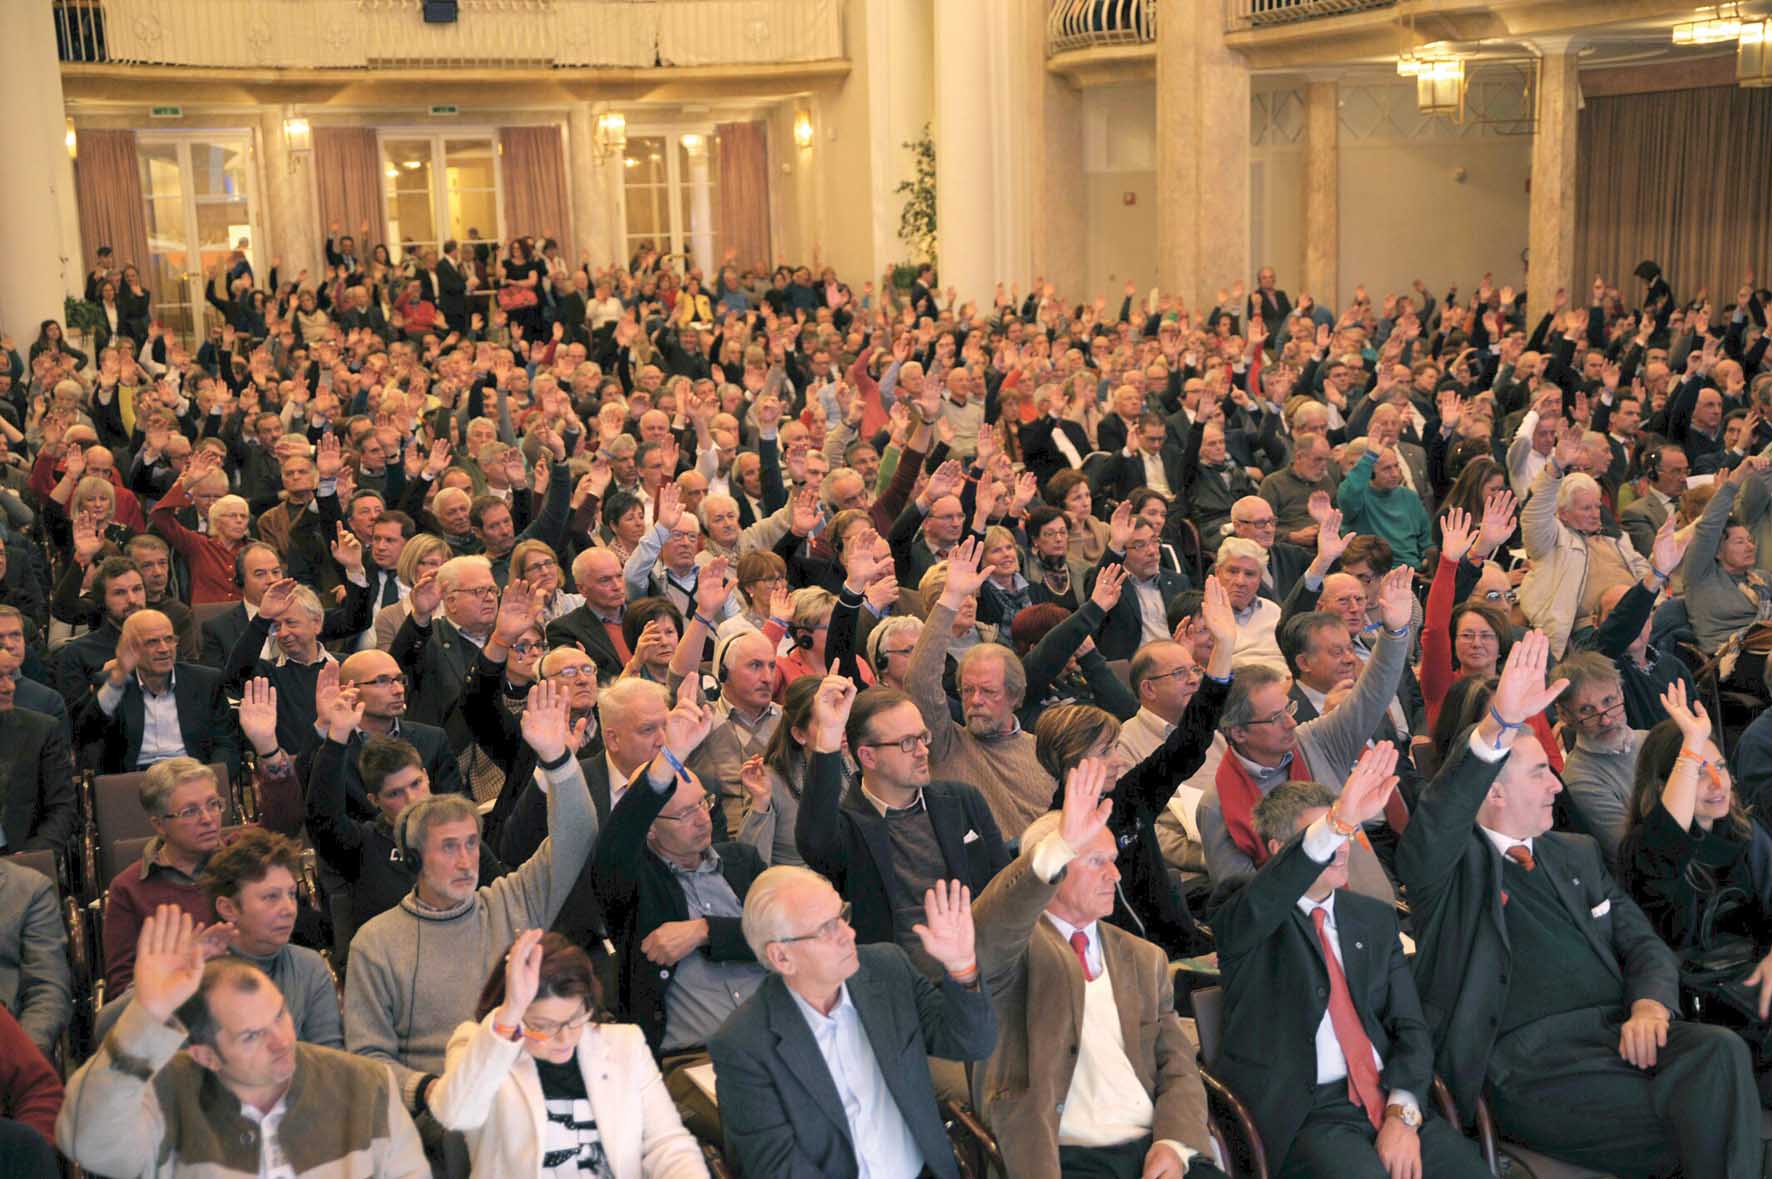 volksbank assemblea fusione con popolare marostica kursaal merano 1